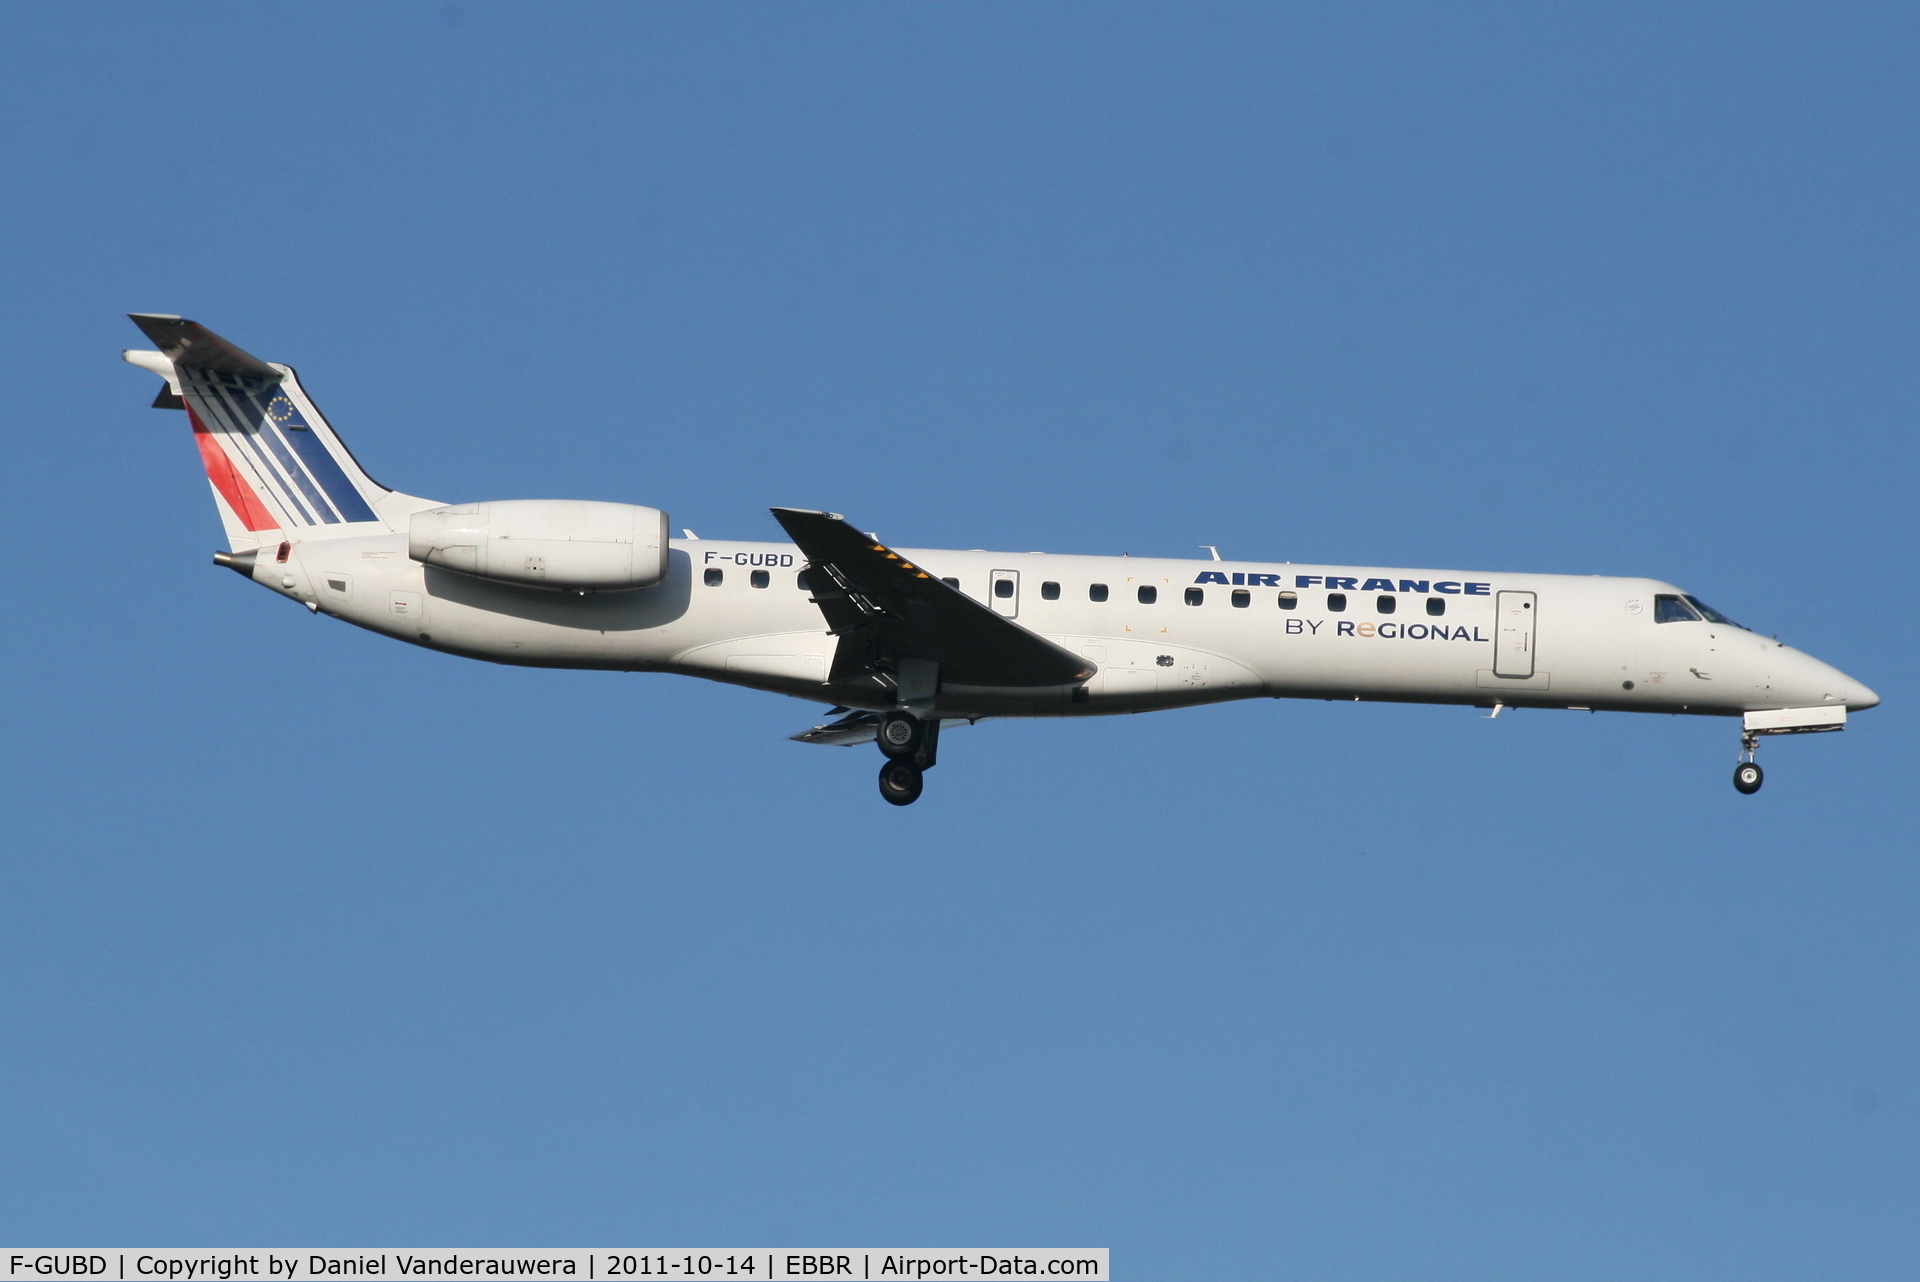 F-GUBD, 2000 Embraer ERJ-145LR (EMB-145LR) C/N 145333, Arrival of flight AF5402 to RWY 02